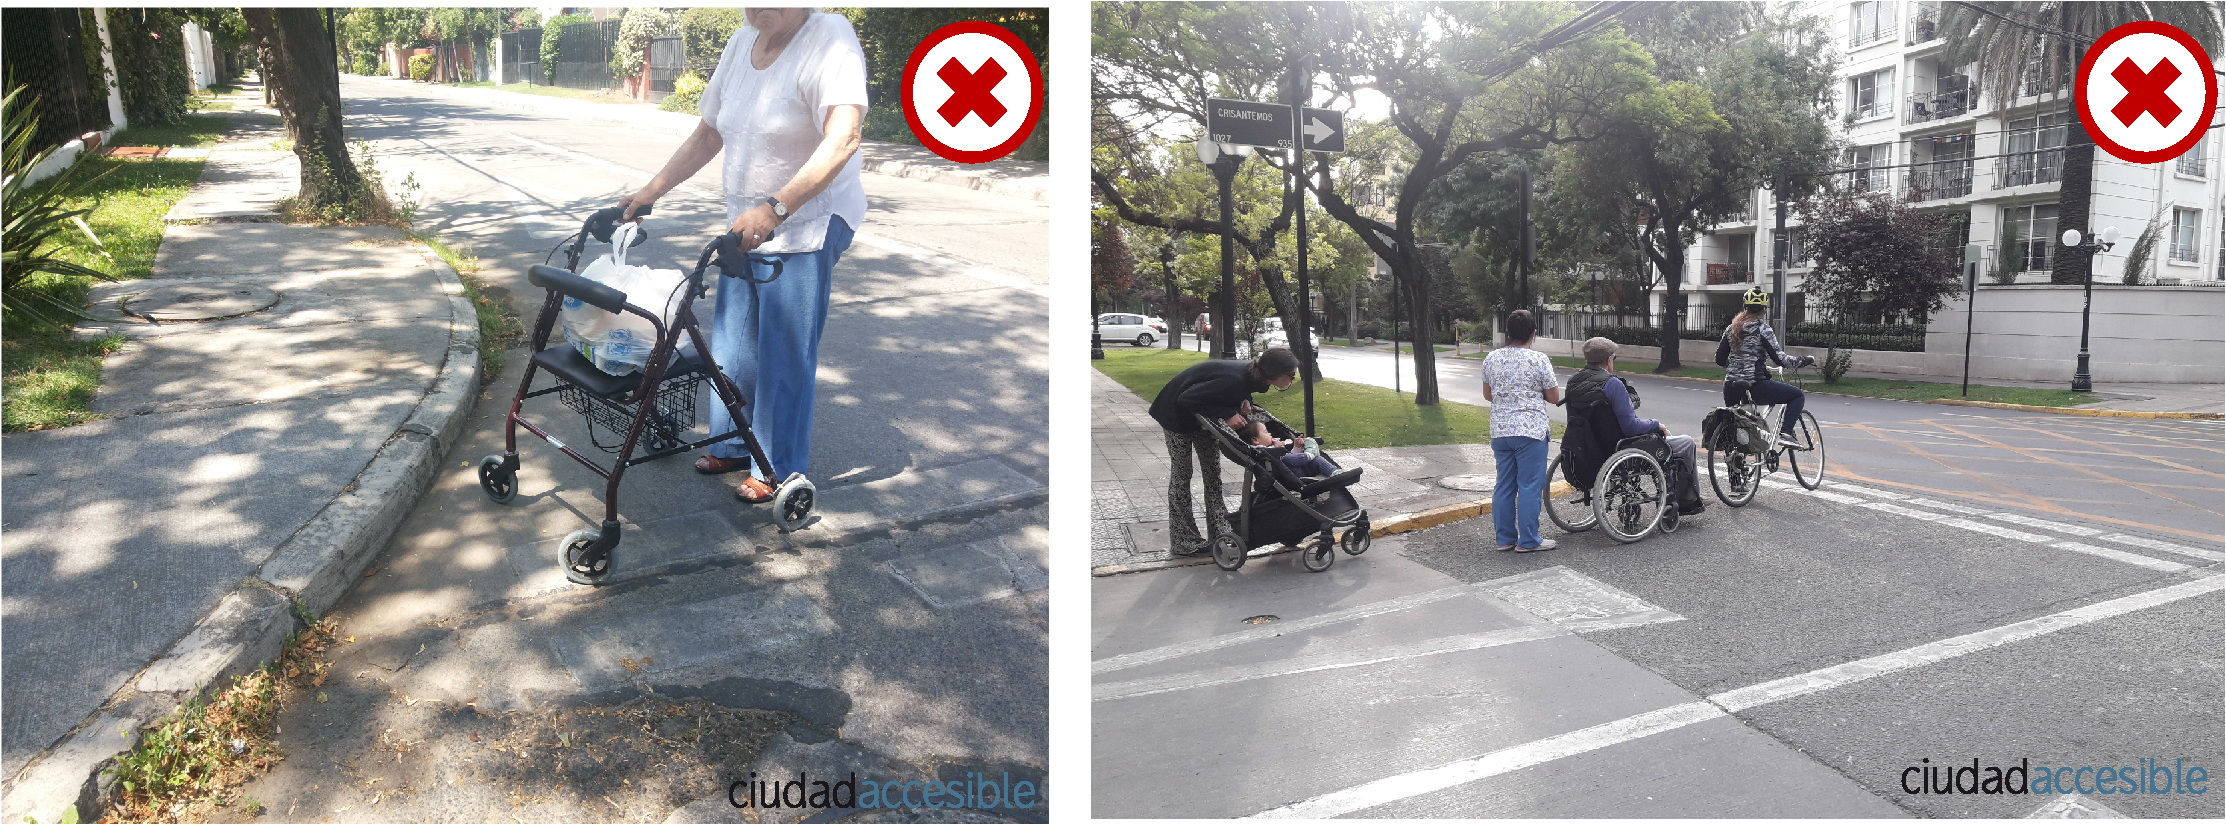 Una foto muestra a una mujer con un burrito cruzando la calzada sin rebaje peatonal y la segunda varias personas esperando cruzar sin demarcación en la calzada